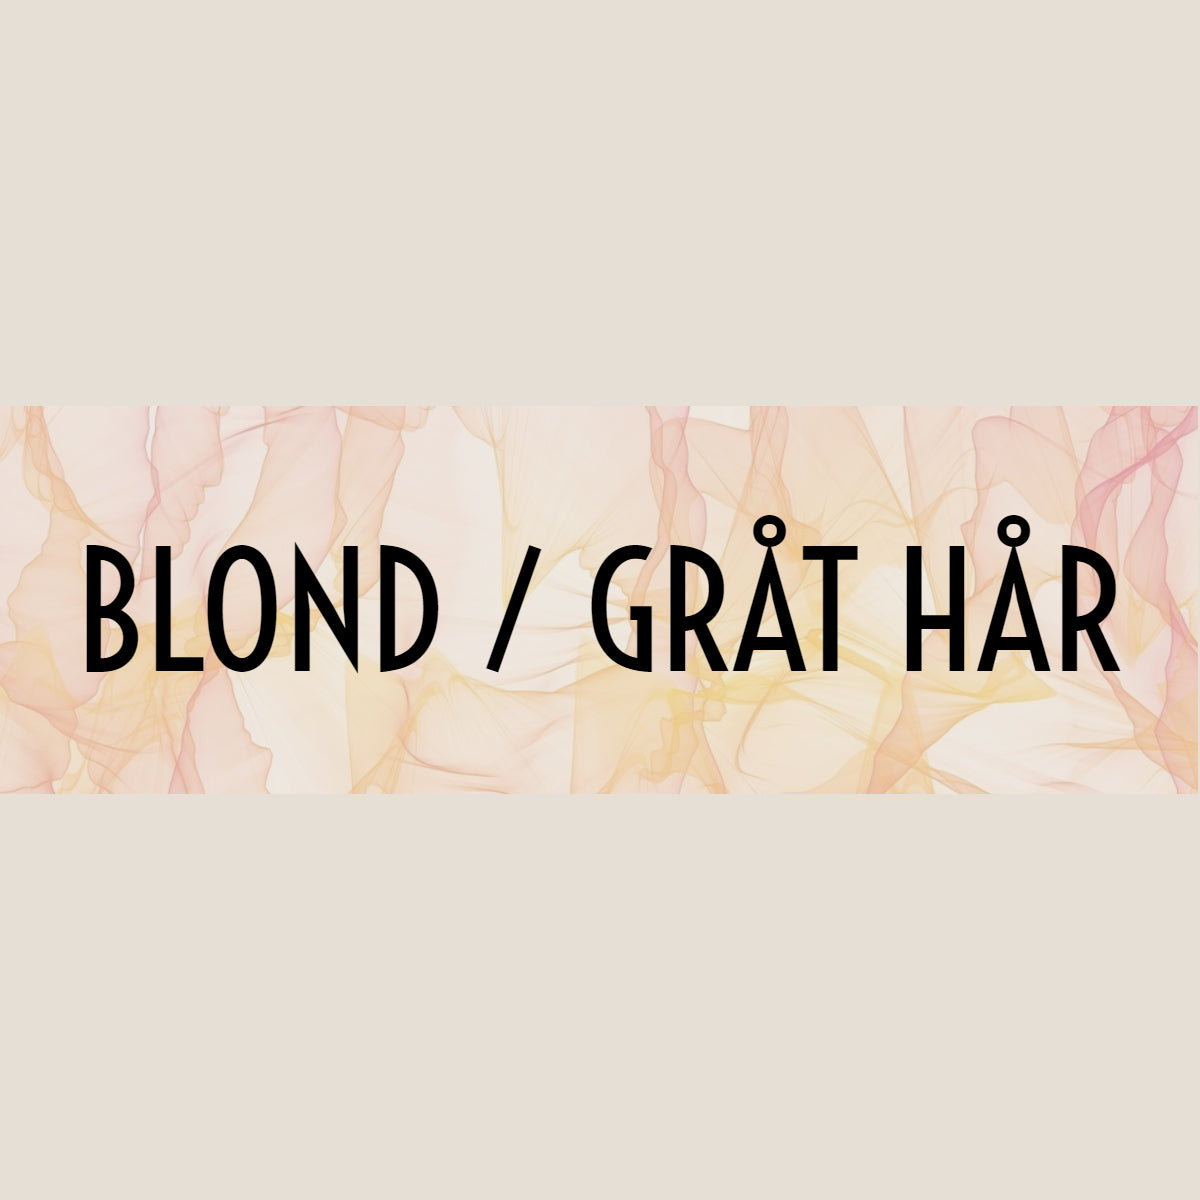 Blond og gråt hår